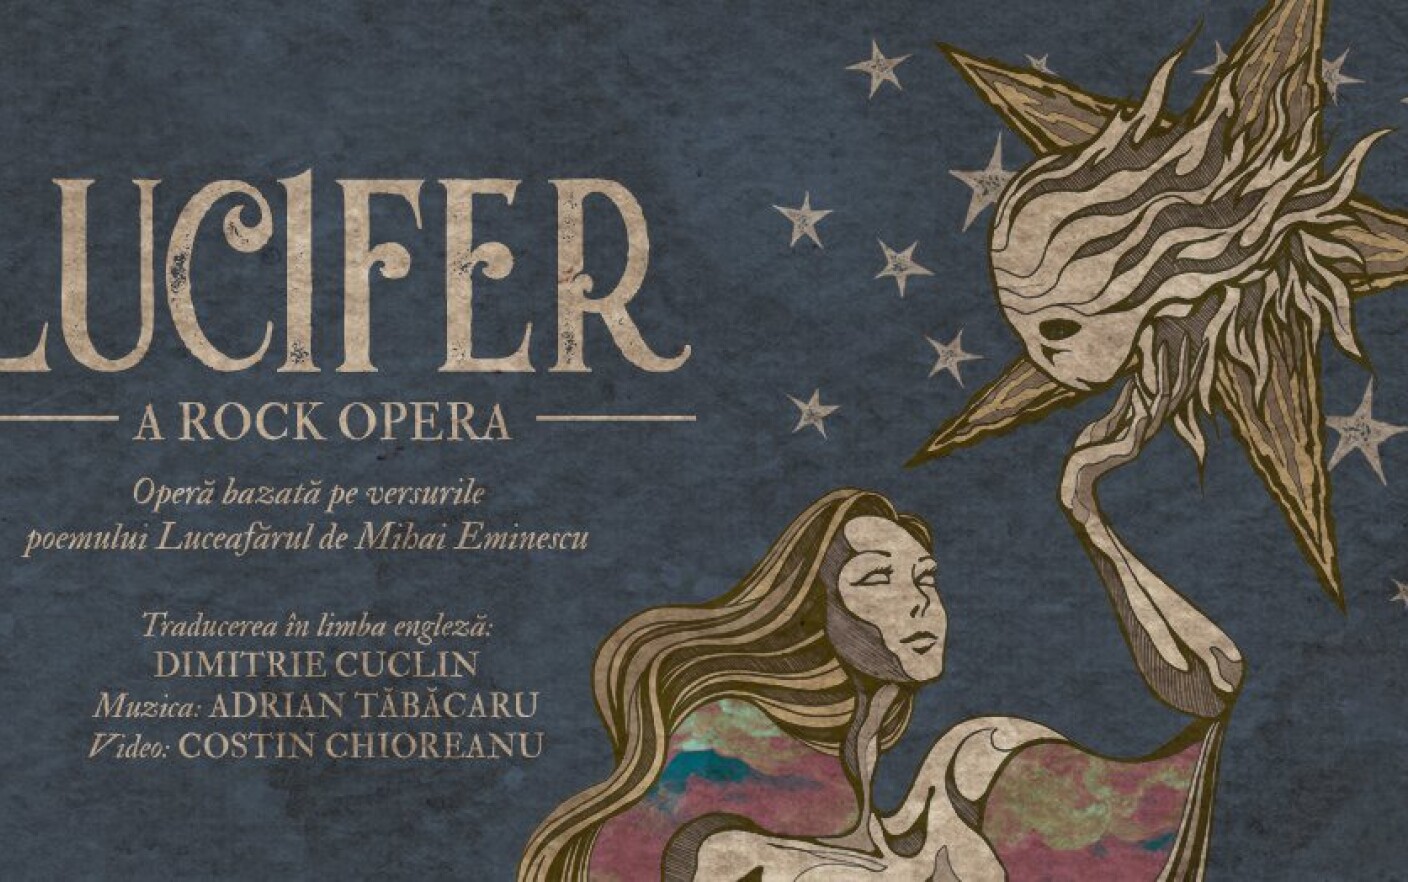 Lucifer a rock opera